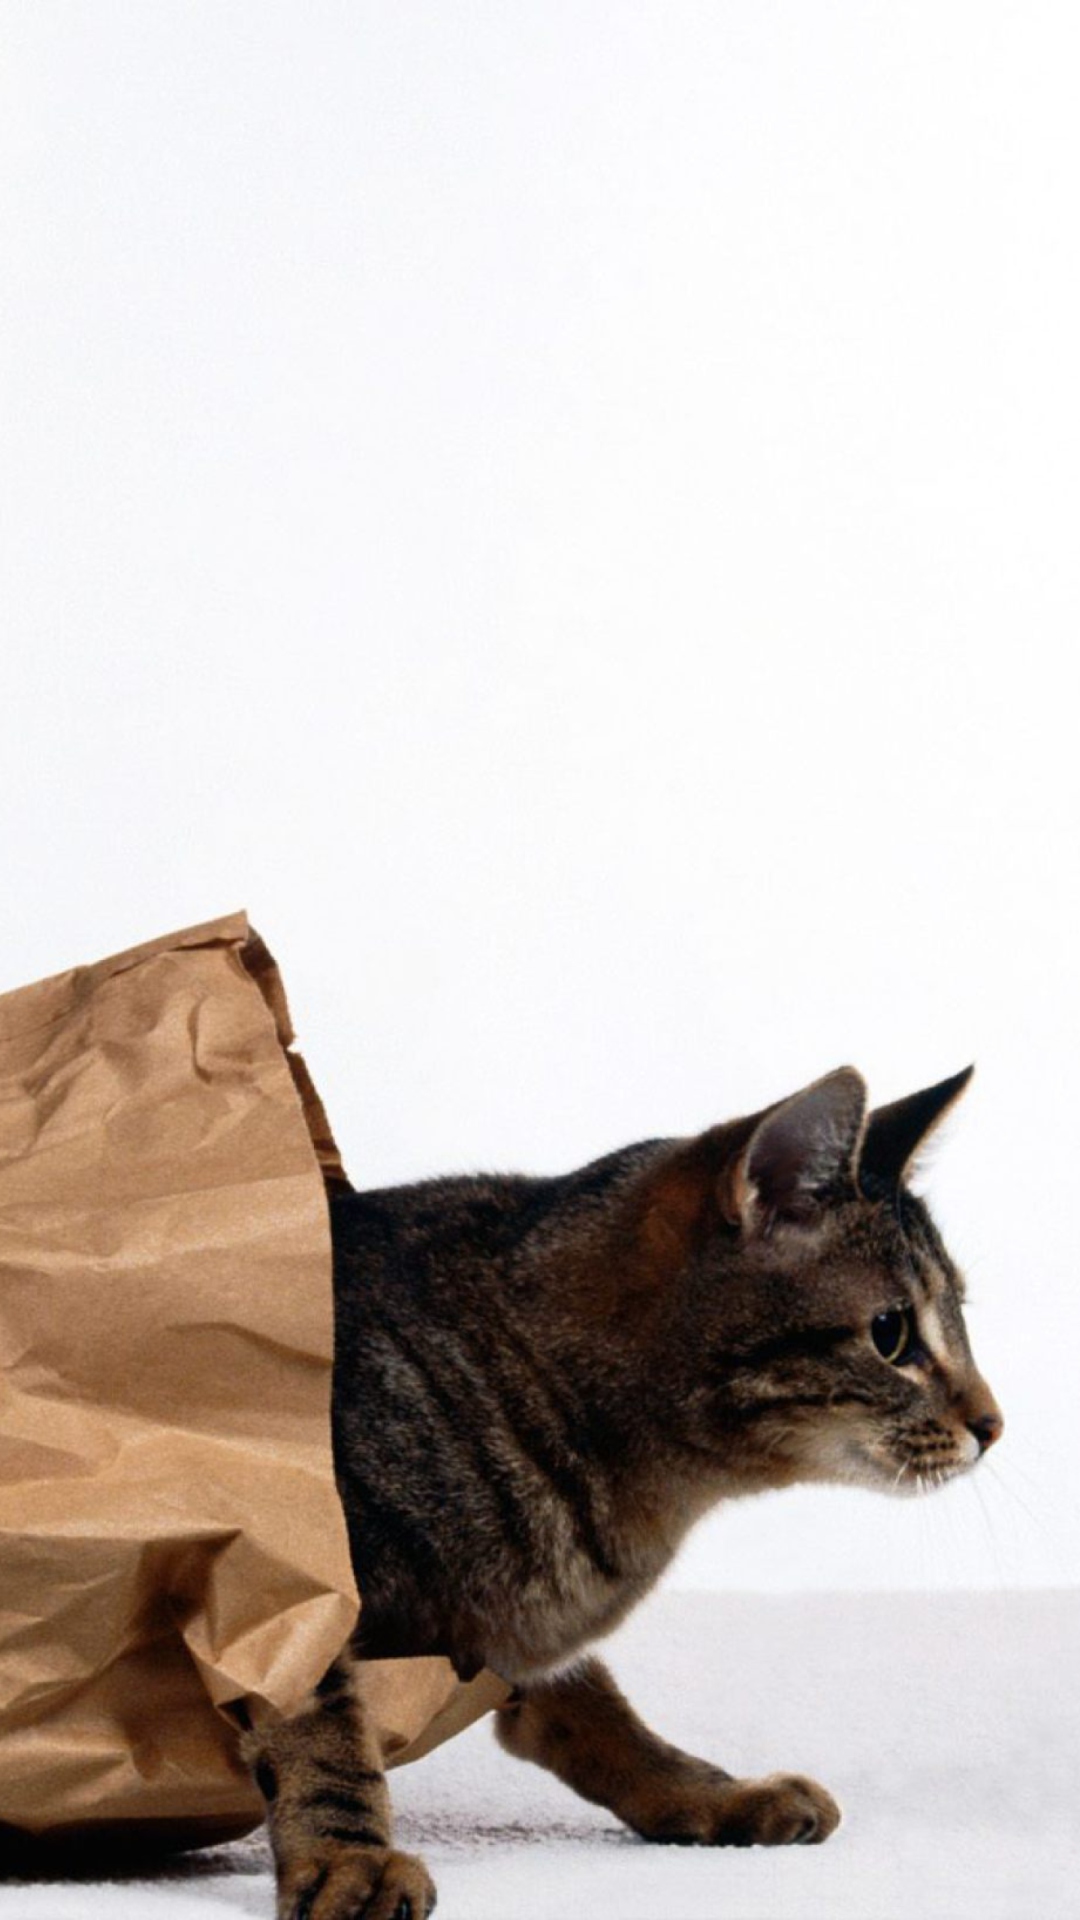 Cat In Paperbag wallpaper 1080x1920